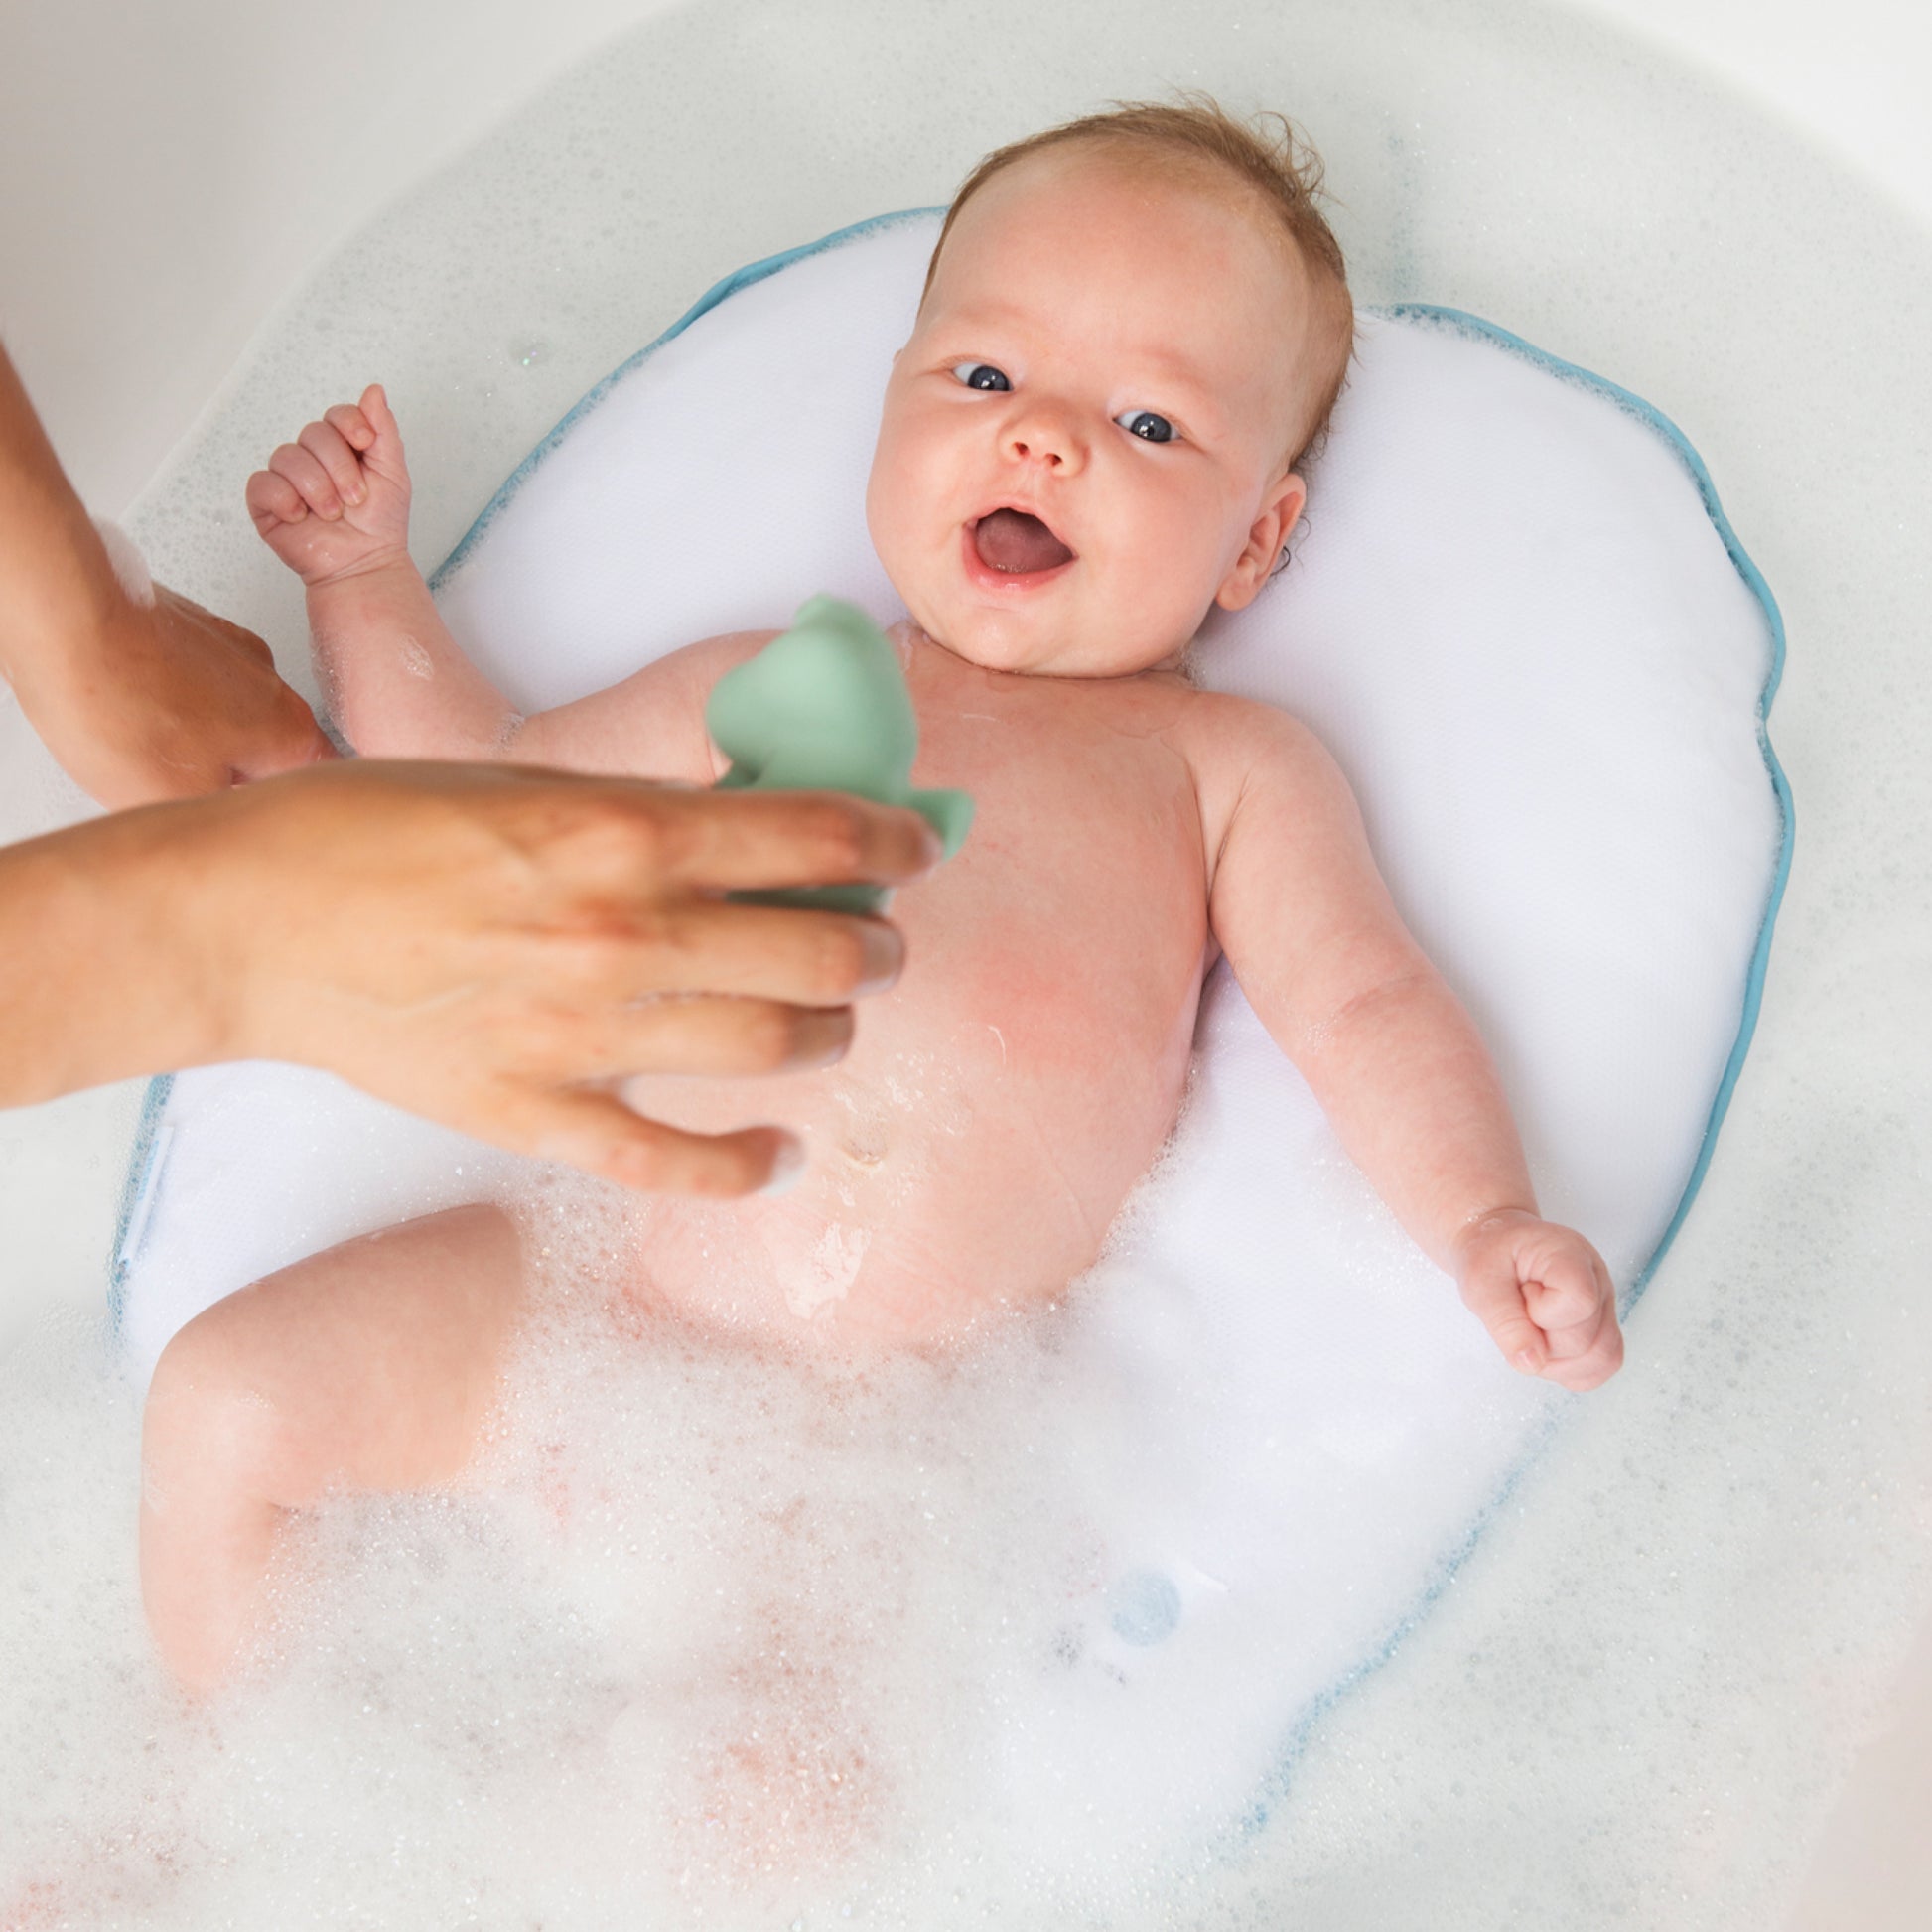 Badkussen om je baby handsfree in bad te doen. Hij kan veilig in het water liggen. Veilig voor de baby en geen rugbelasting voor de ouders.